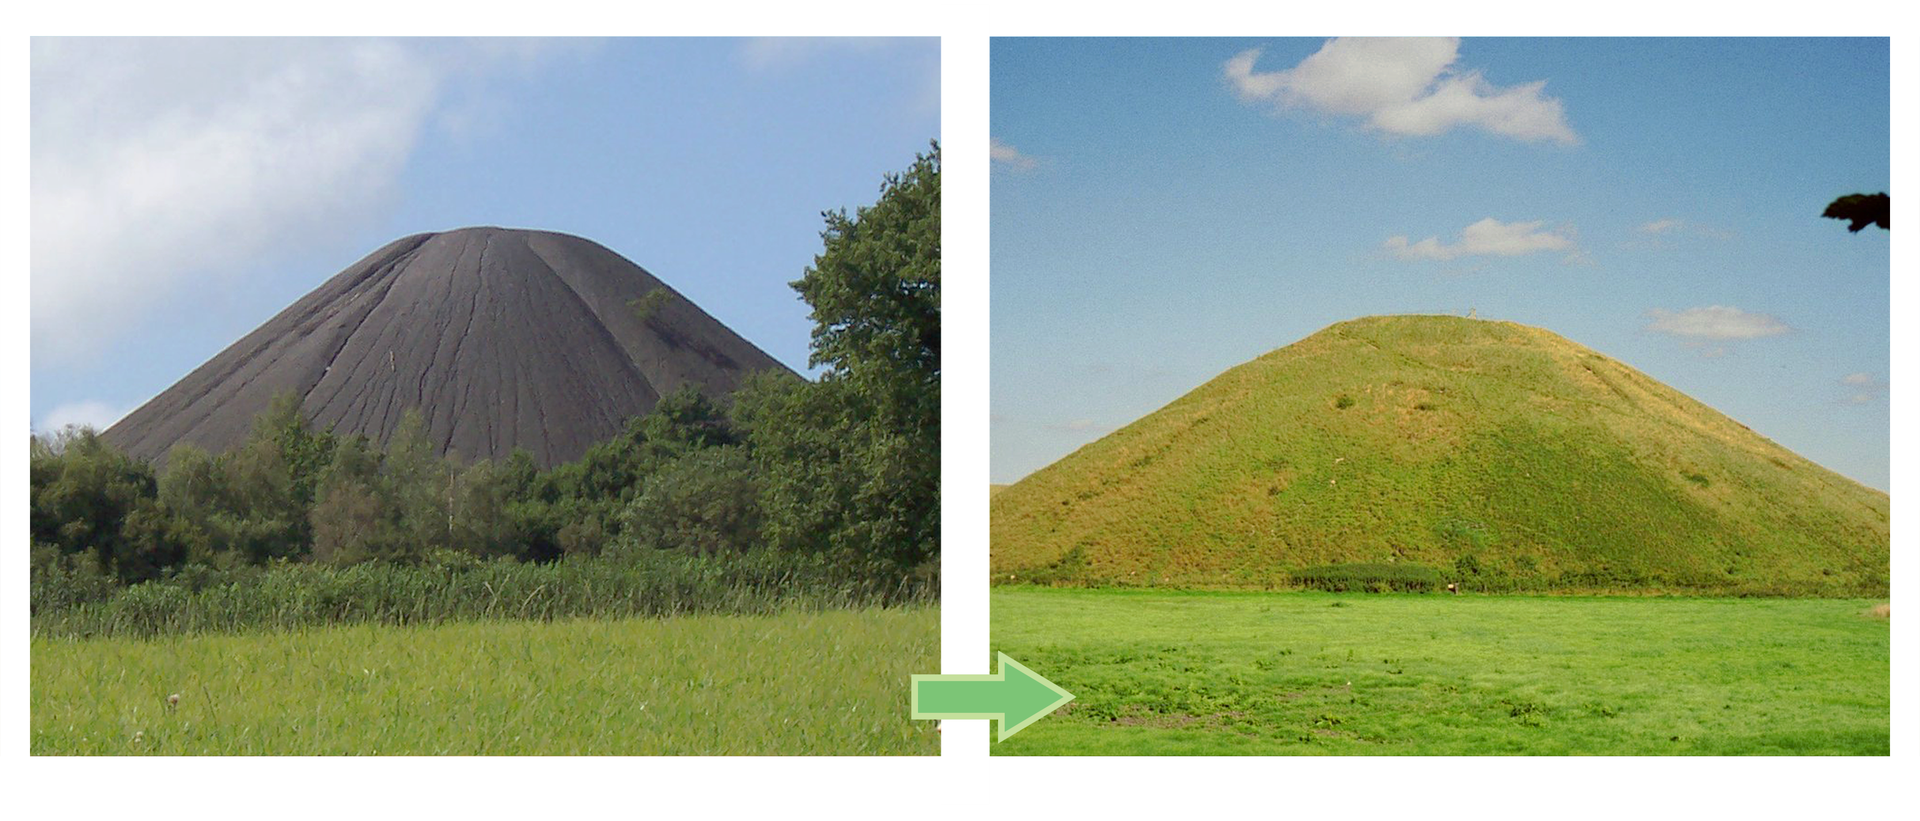 Fotografia po lewej stronie ukazuje wysoka czarną hałdę. Obok fotografia tej samej hałdy porośnięta trawą i innymi roślinami zielnymi.